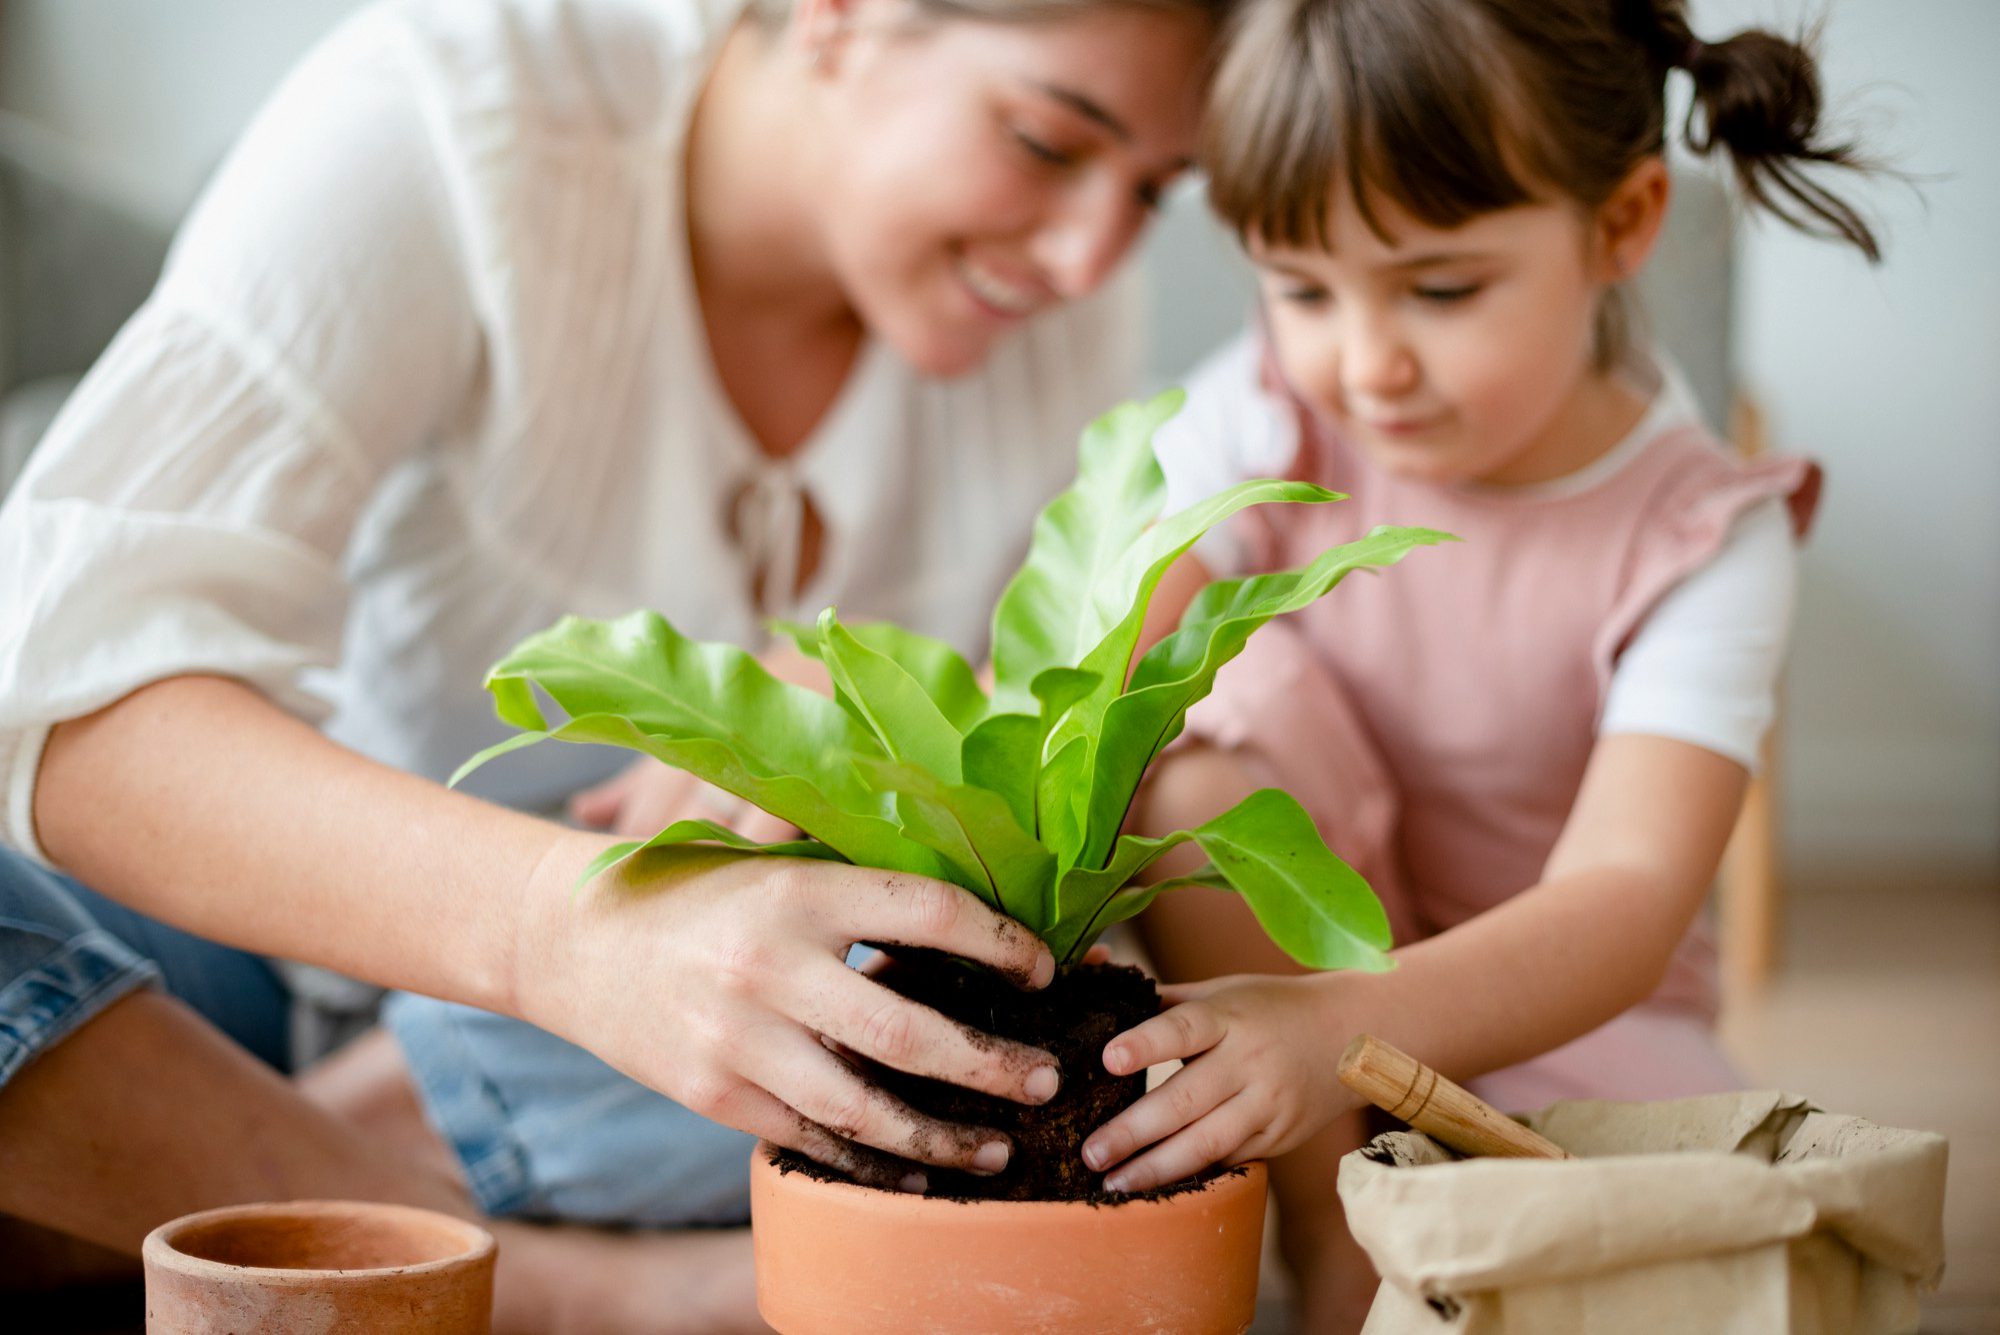 Involve Children in Indoor Plant Care